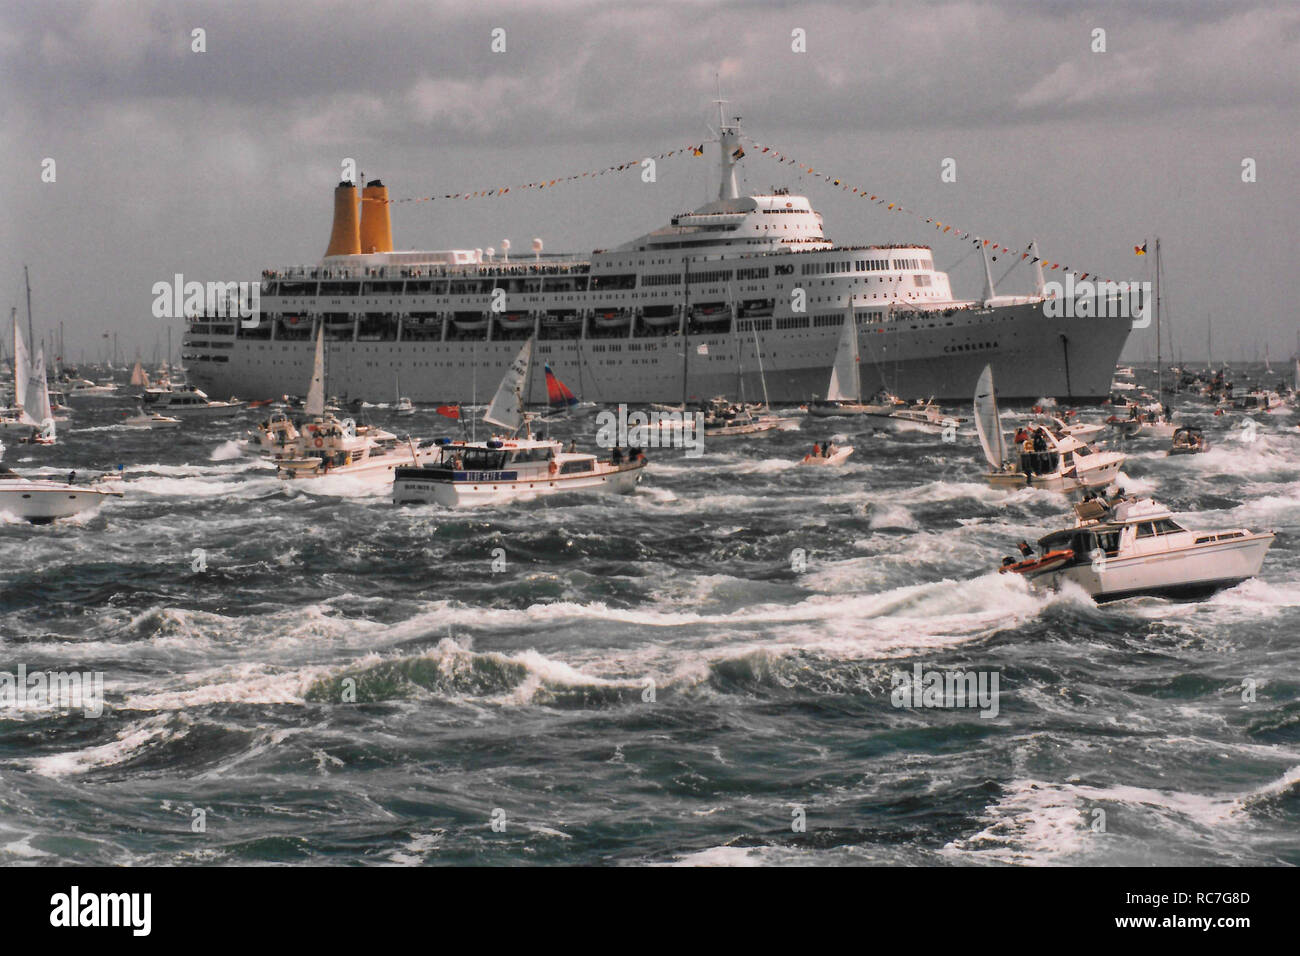 P&O cruise ship Canberra le mer agitée et entouré par les petites embarcations de plaisance à l'occasion du 50e anniversaire du jour à Spithead,off Portsmouth Hampshire en Angleterre le 6 juin 1994. Banque D'Images